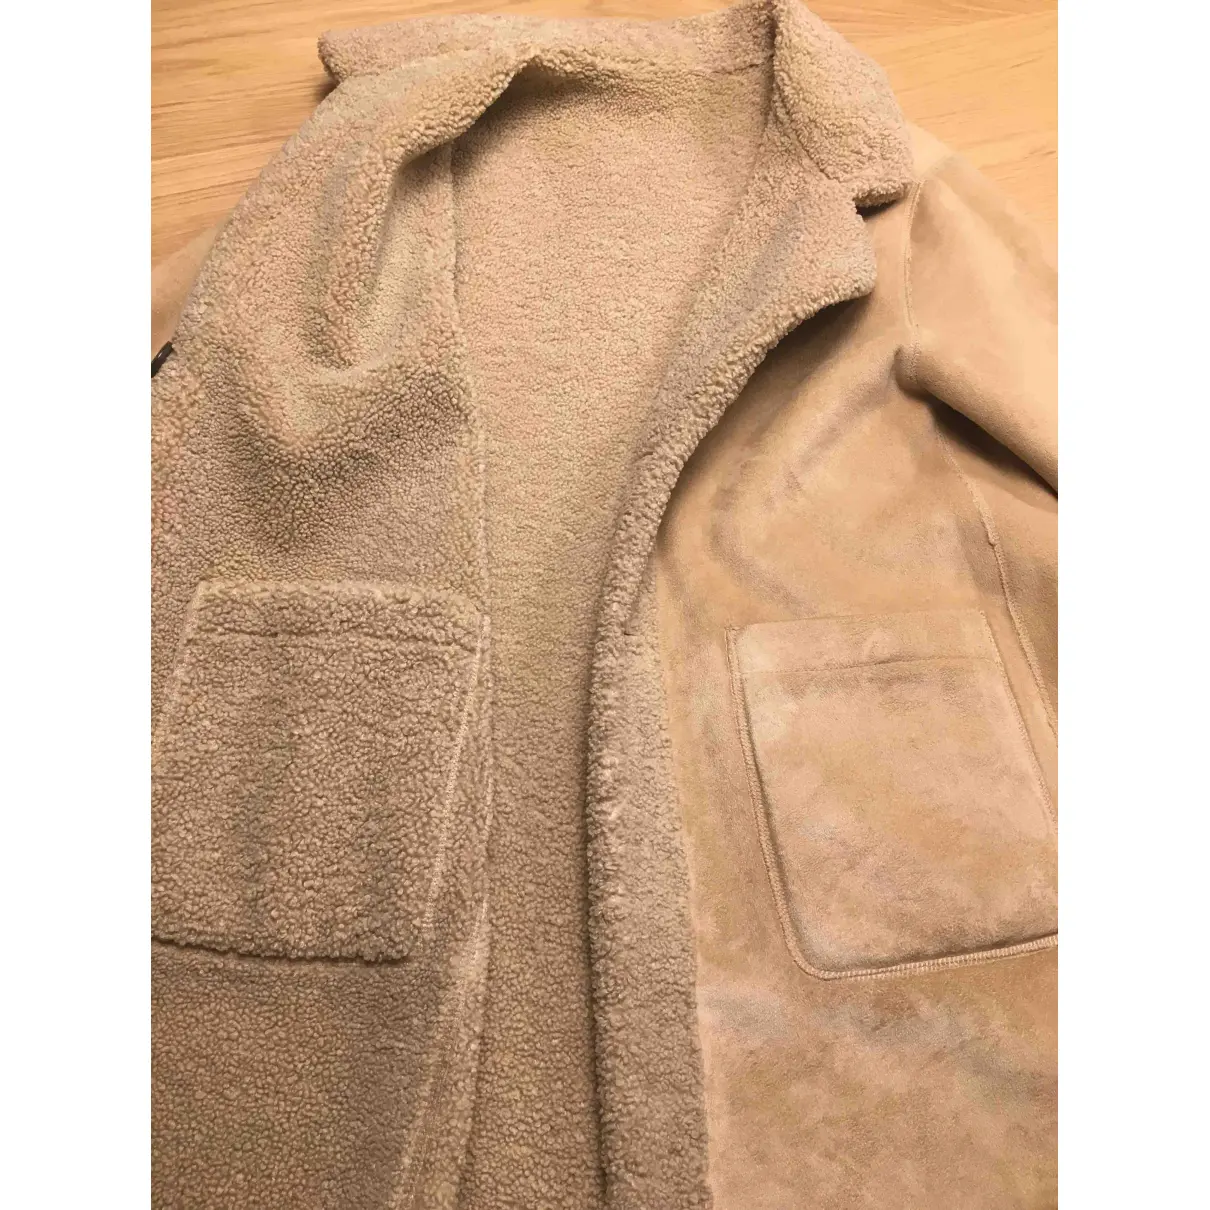 Coat Zara